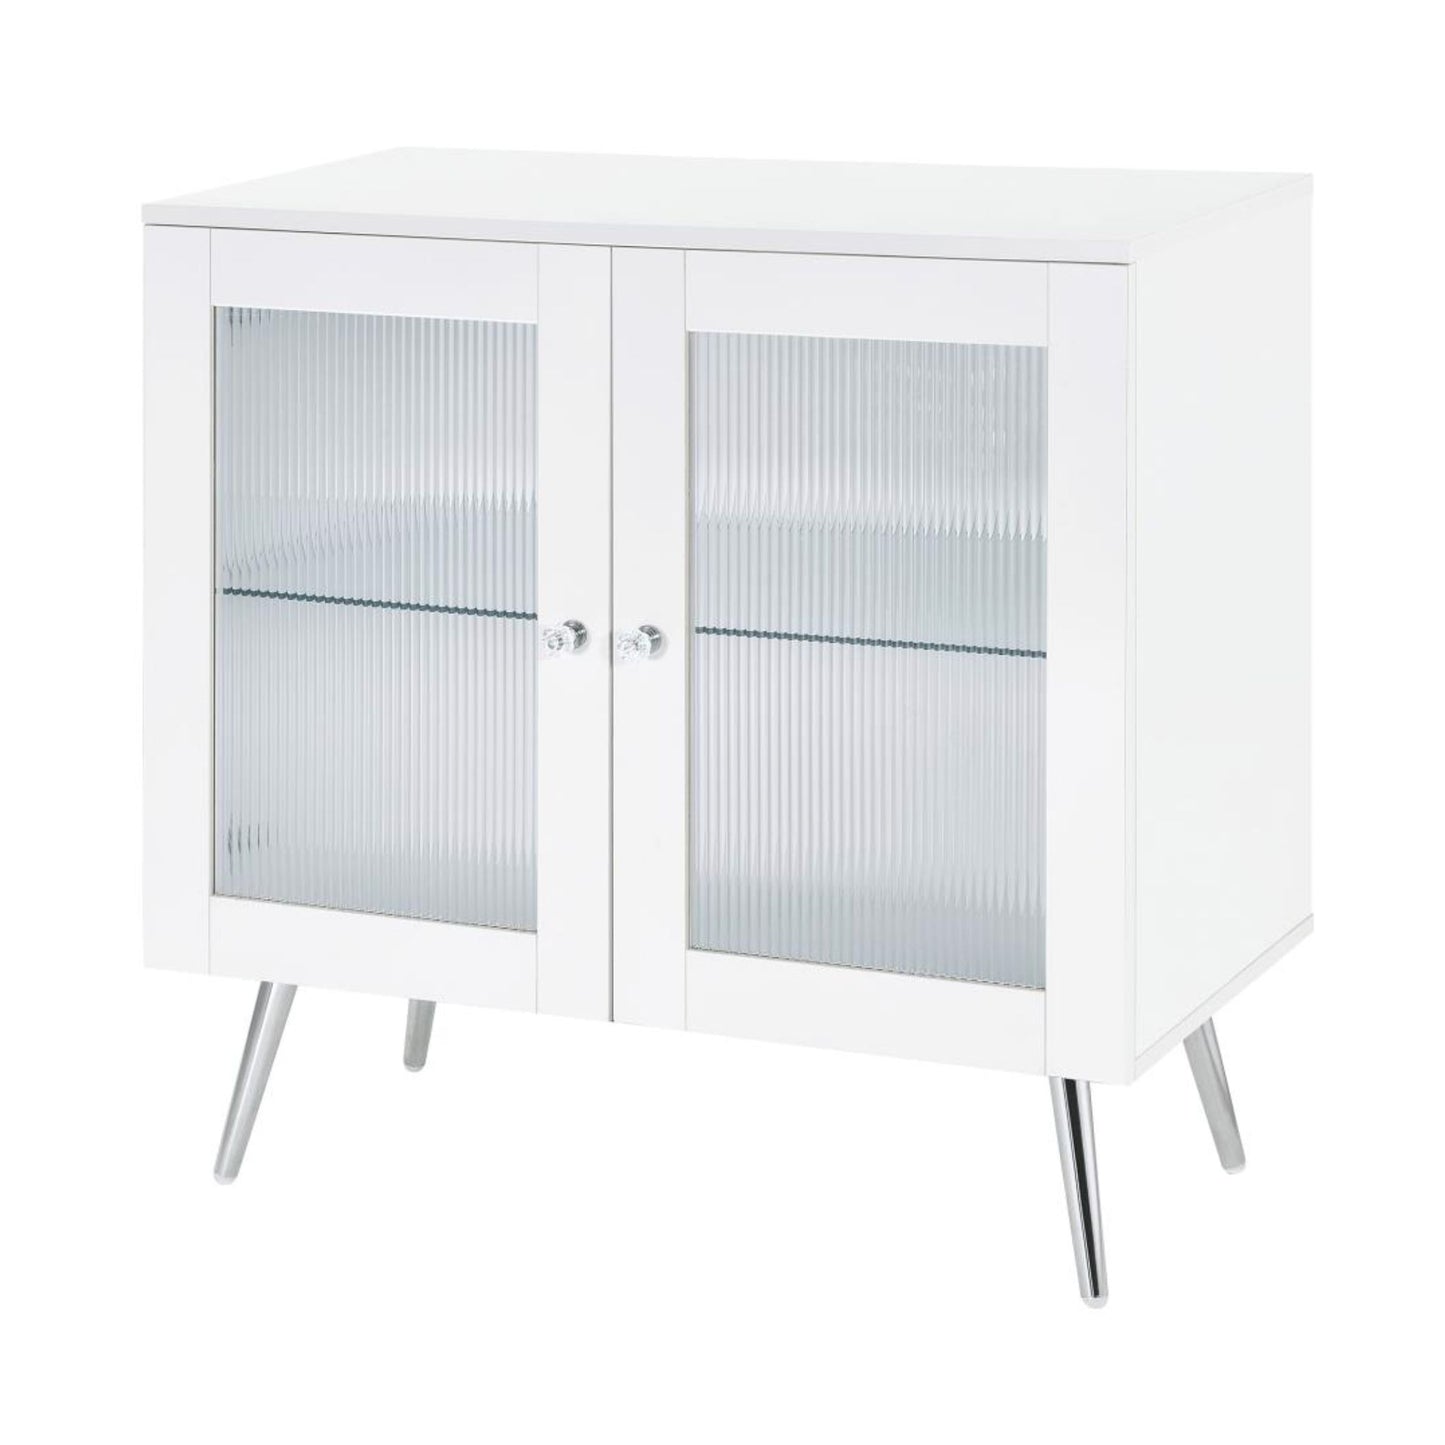 NIETA 2-tier Accent Cabinet with Glass Shelf